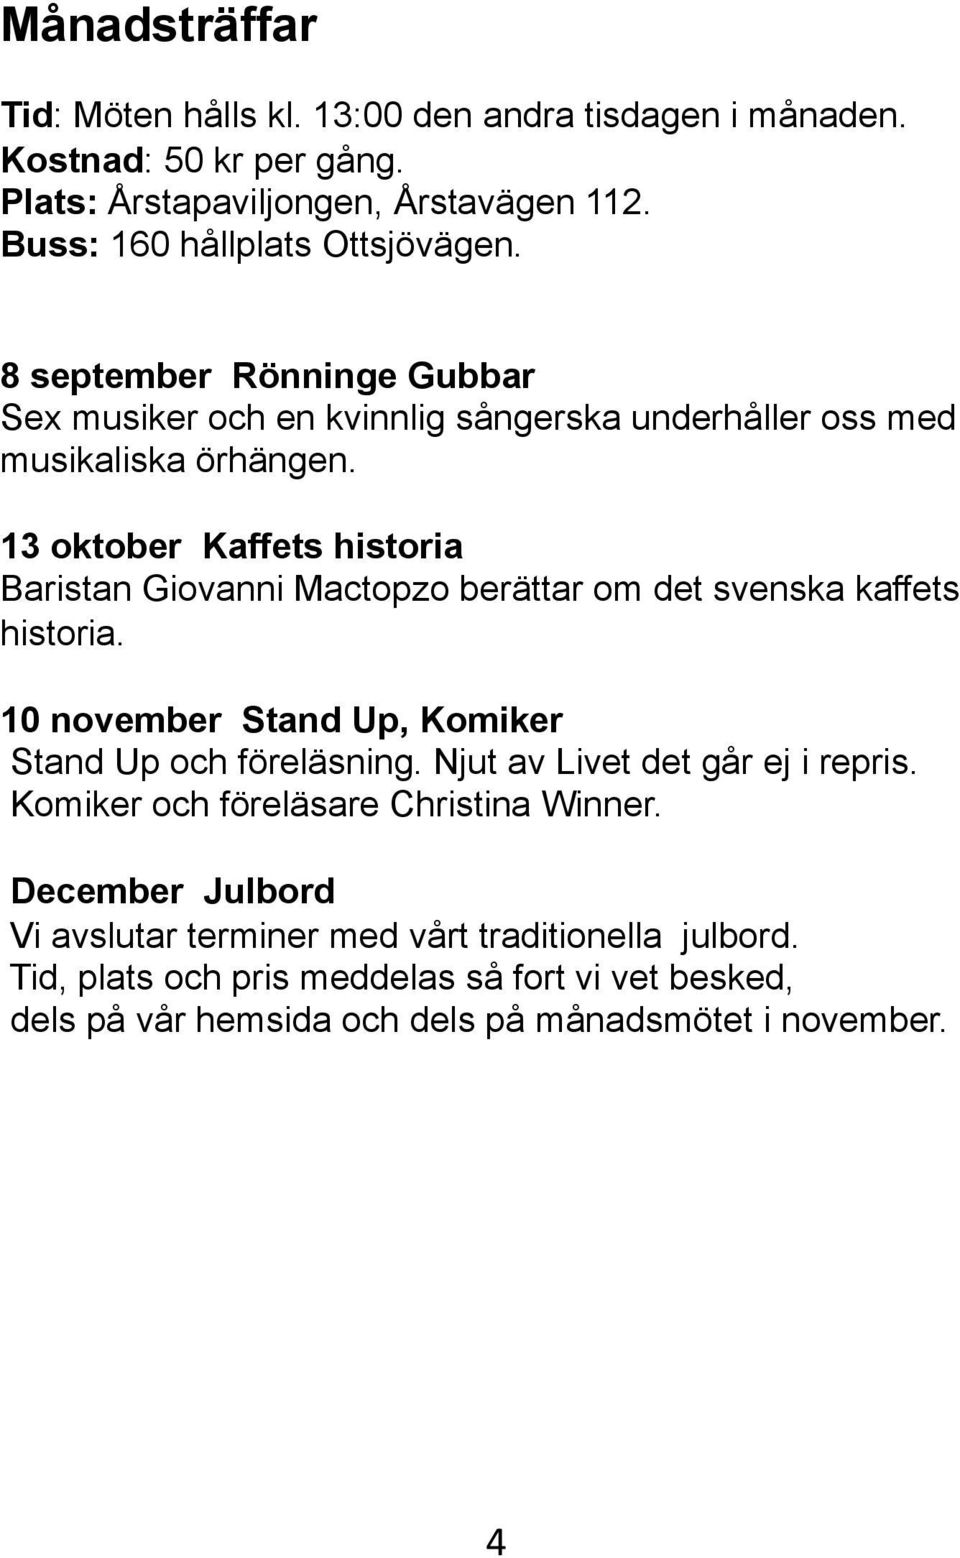 13 oktober Kaffets historia Baristan Giovanni Mactopzo berättar om det svenska kaffets historia. 10 november Stand Up, Komiker Stand Up och föreläsning.